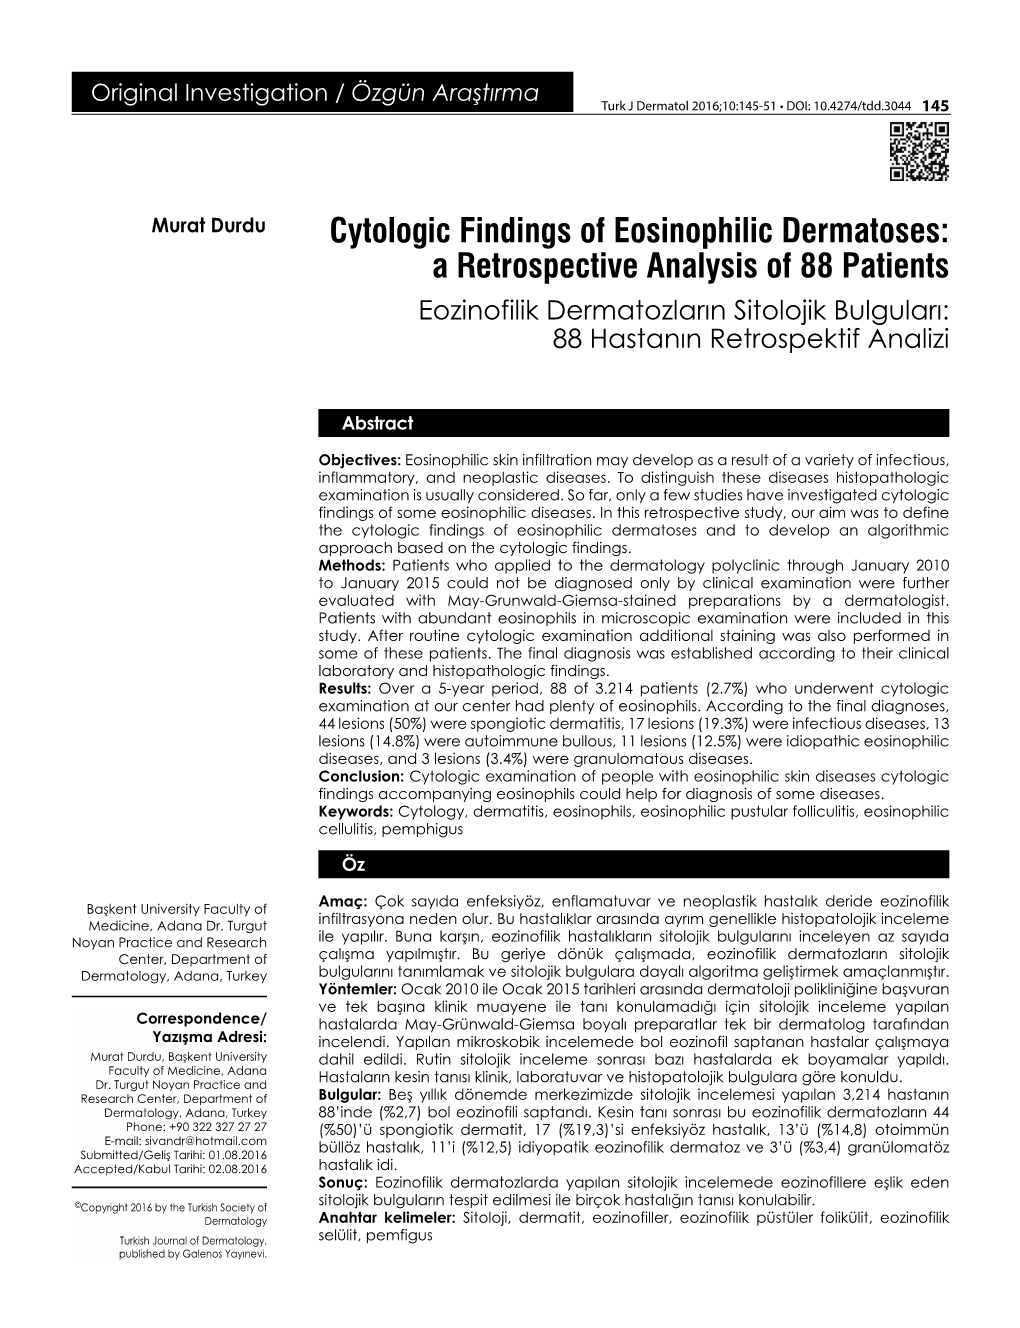 Cytologic Findings of Eosinophilic Dermatoses: a Retrospective Analysis of 88 Patients Eozinofilik Dermatozların Sitolojik Bulguları: 88 Hastanın Retrospektif Analizi